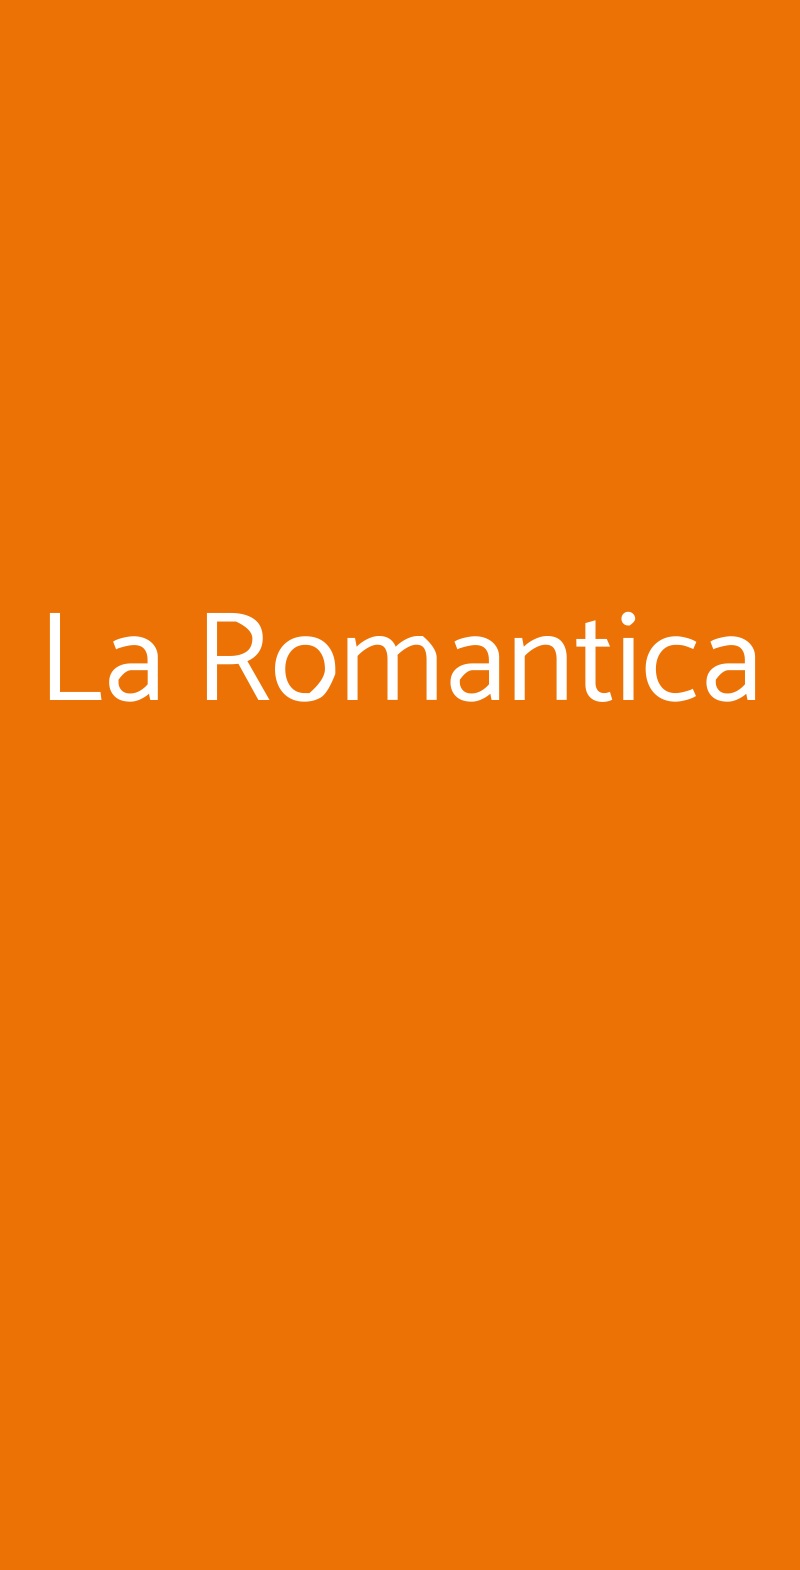 La Romantica Roma menù 1 pagina